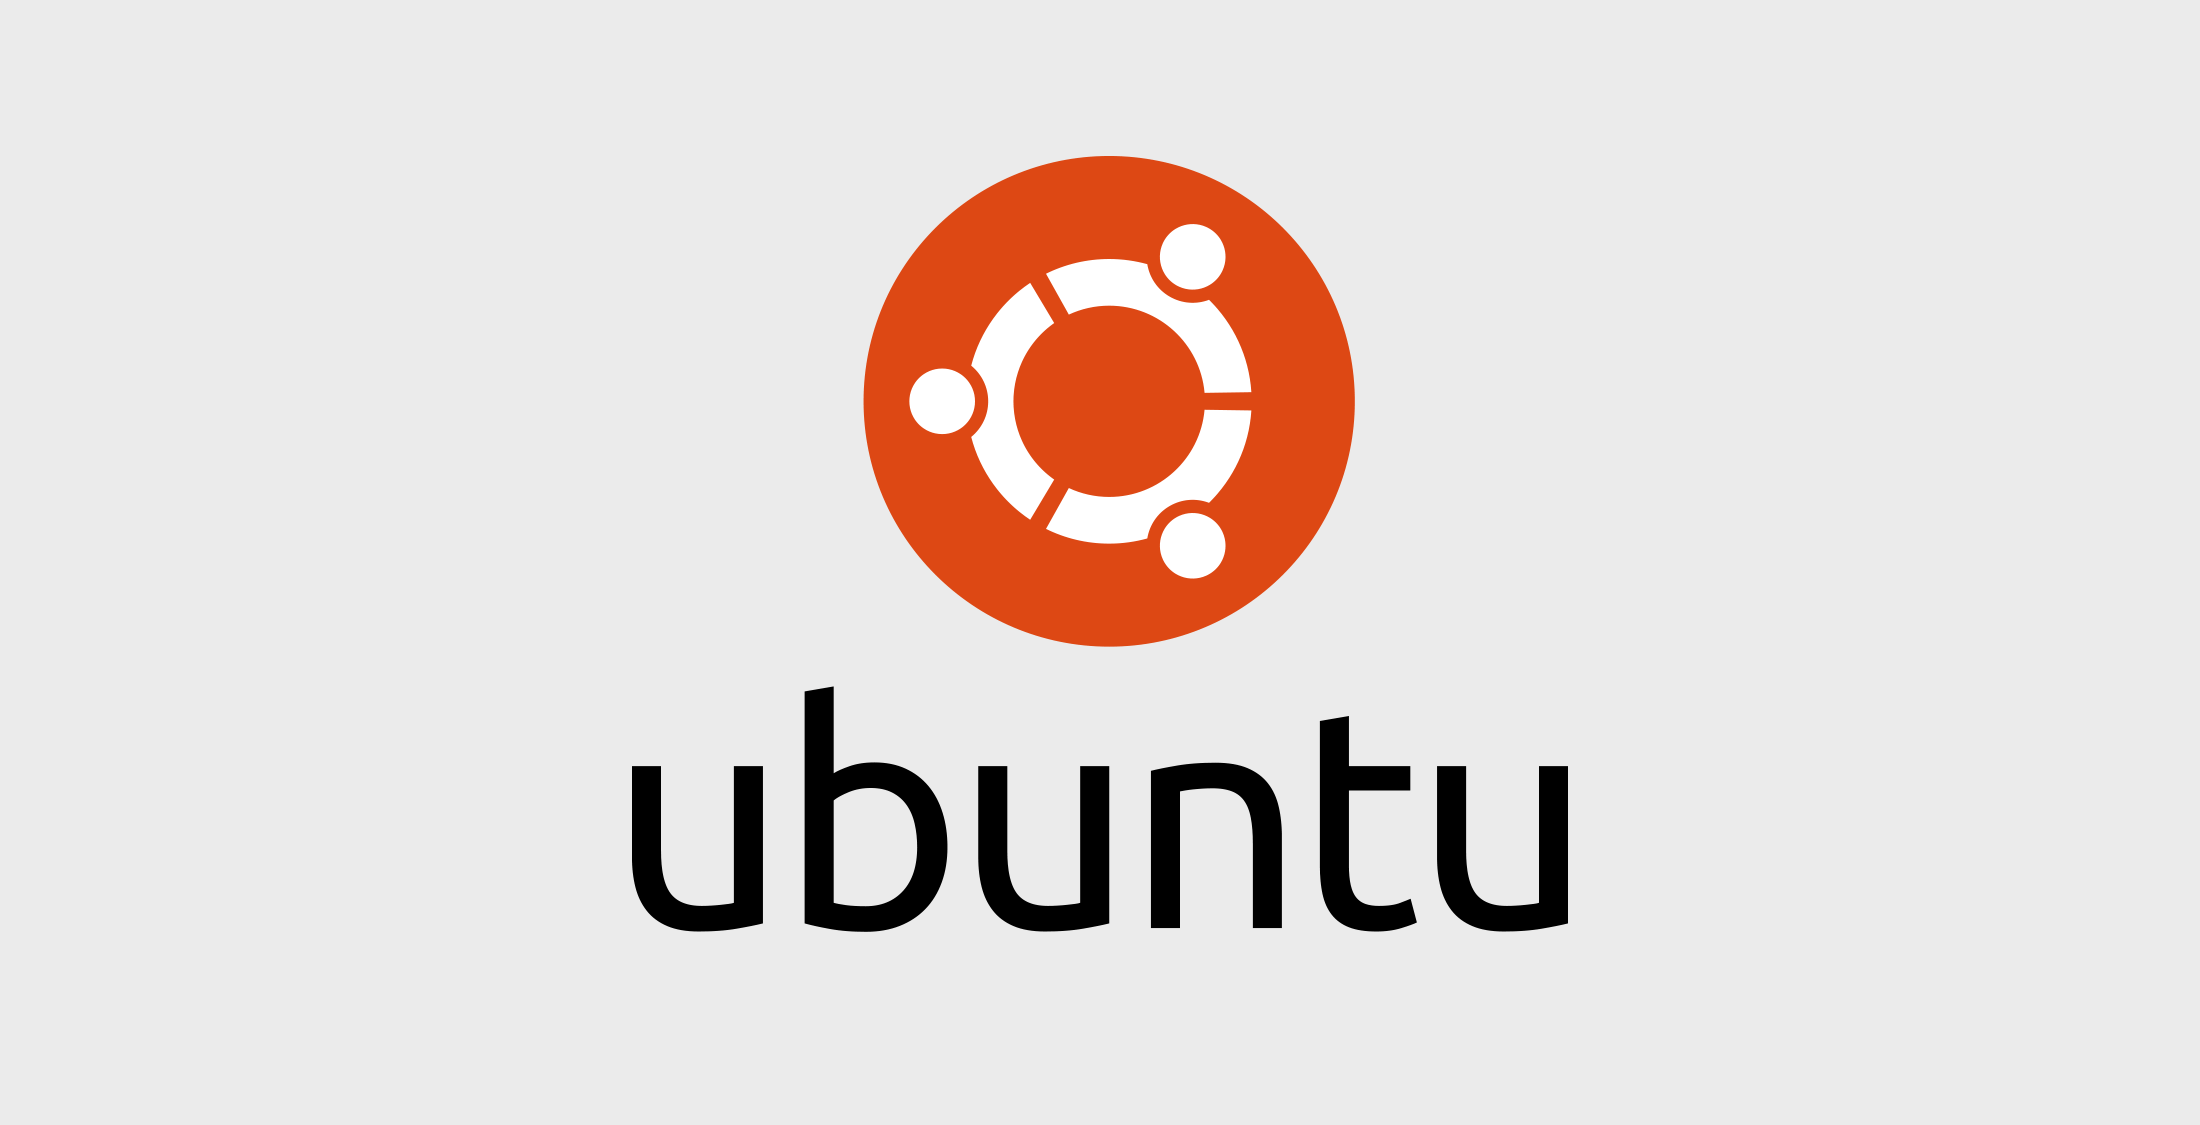 ubuntu là gì